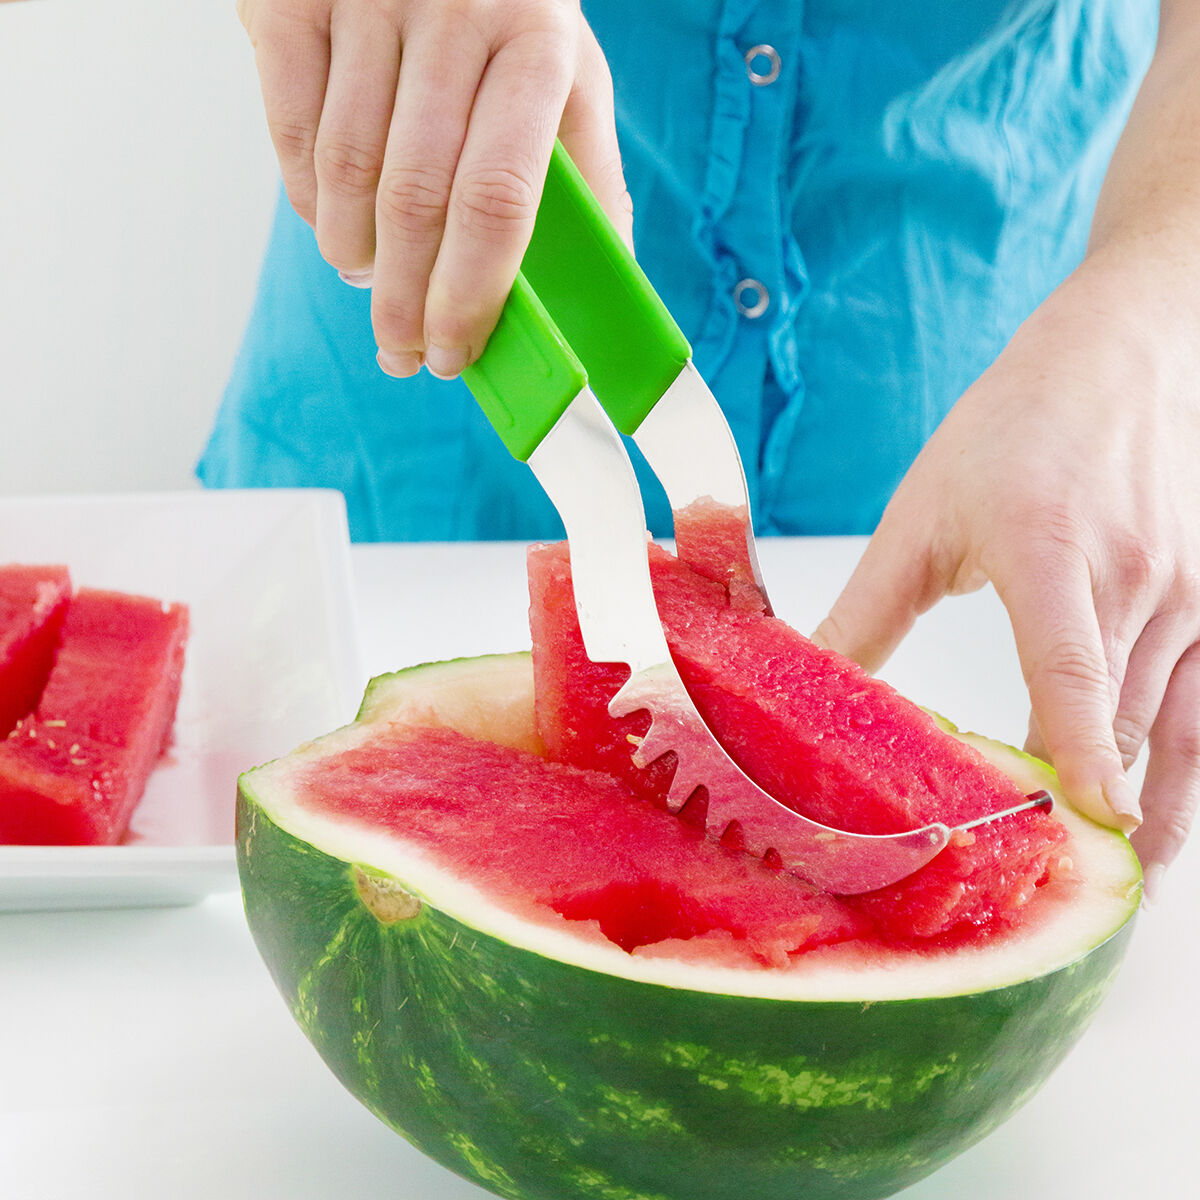 Watermelon Slicer Wasslon InnovaGoods